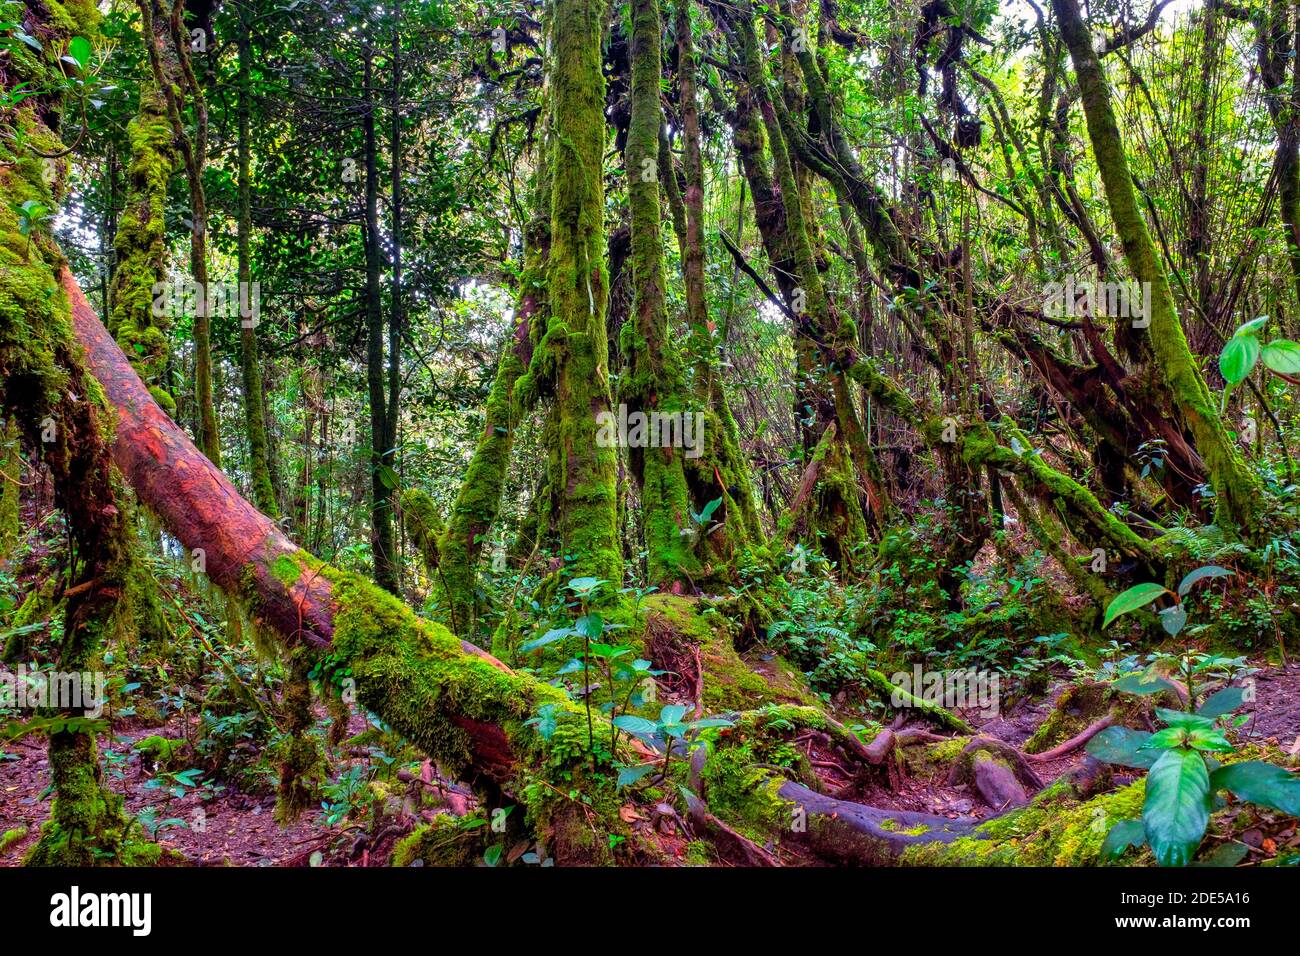 The Mossy Forest Of Gunung Brinchang, Brinchang, Malaysia Stock Photo